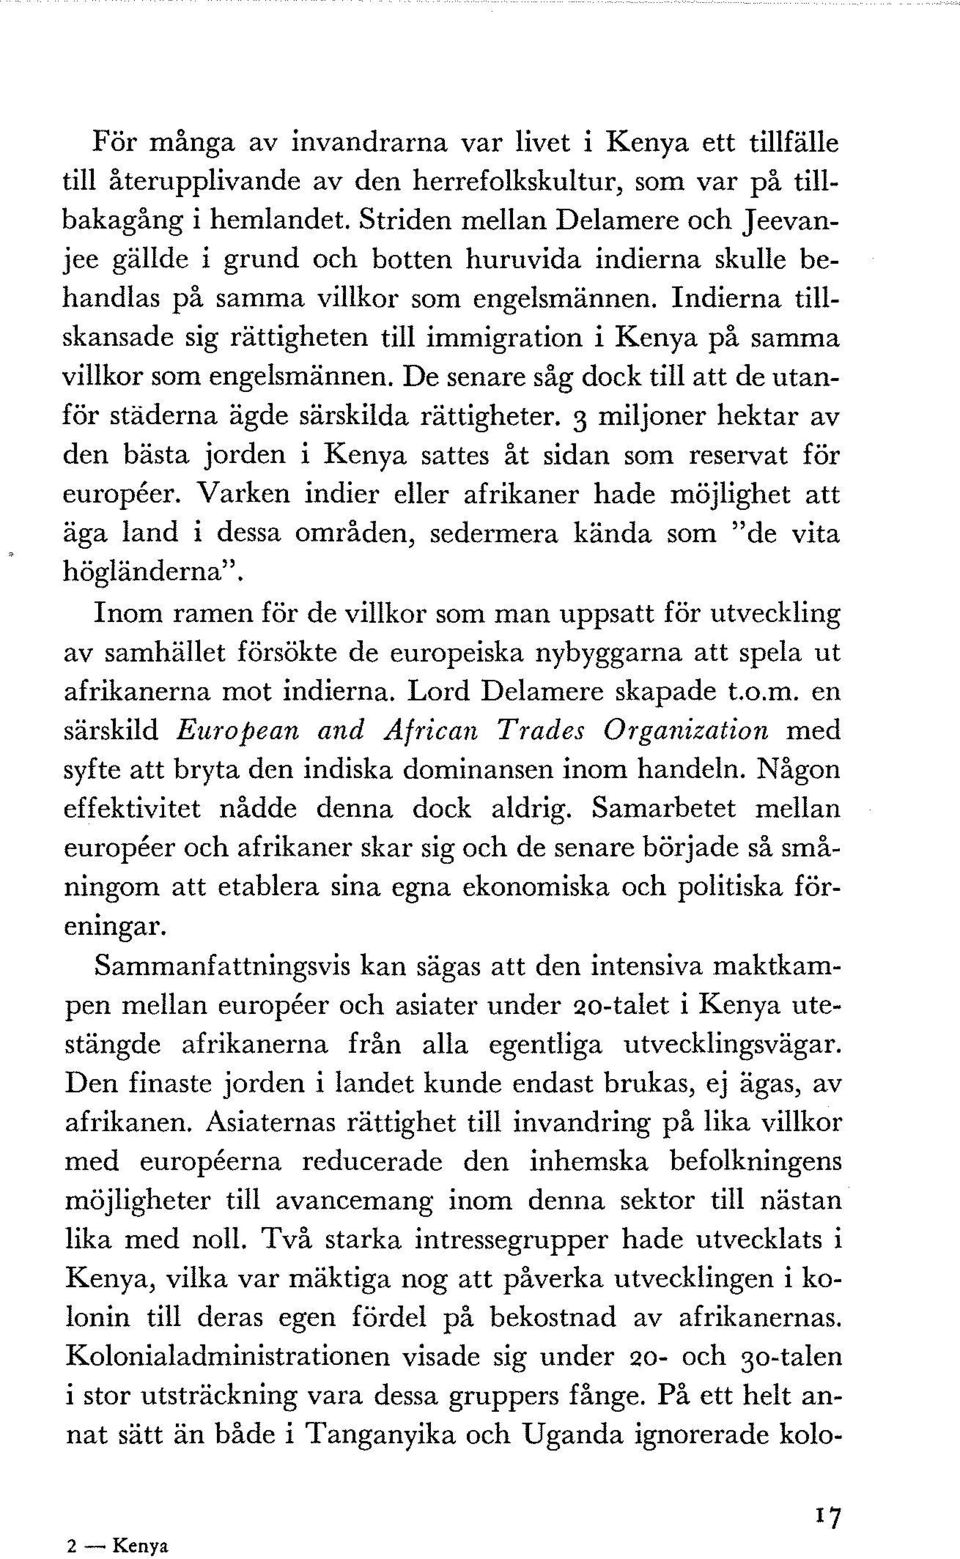 Indierna tillskansade sig rättigheten till immigration i Kenya på samma villkor som engelsmännen. De senare såg dock till att de utanför städerna ägde särskilda rättigheter.